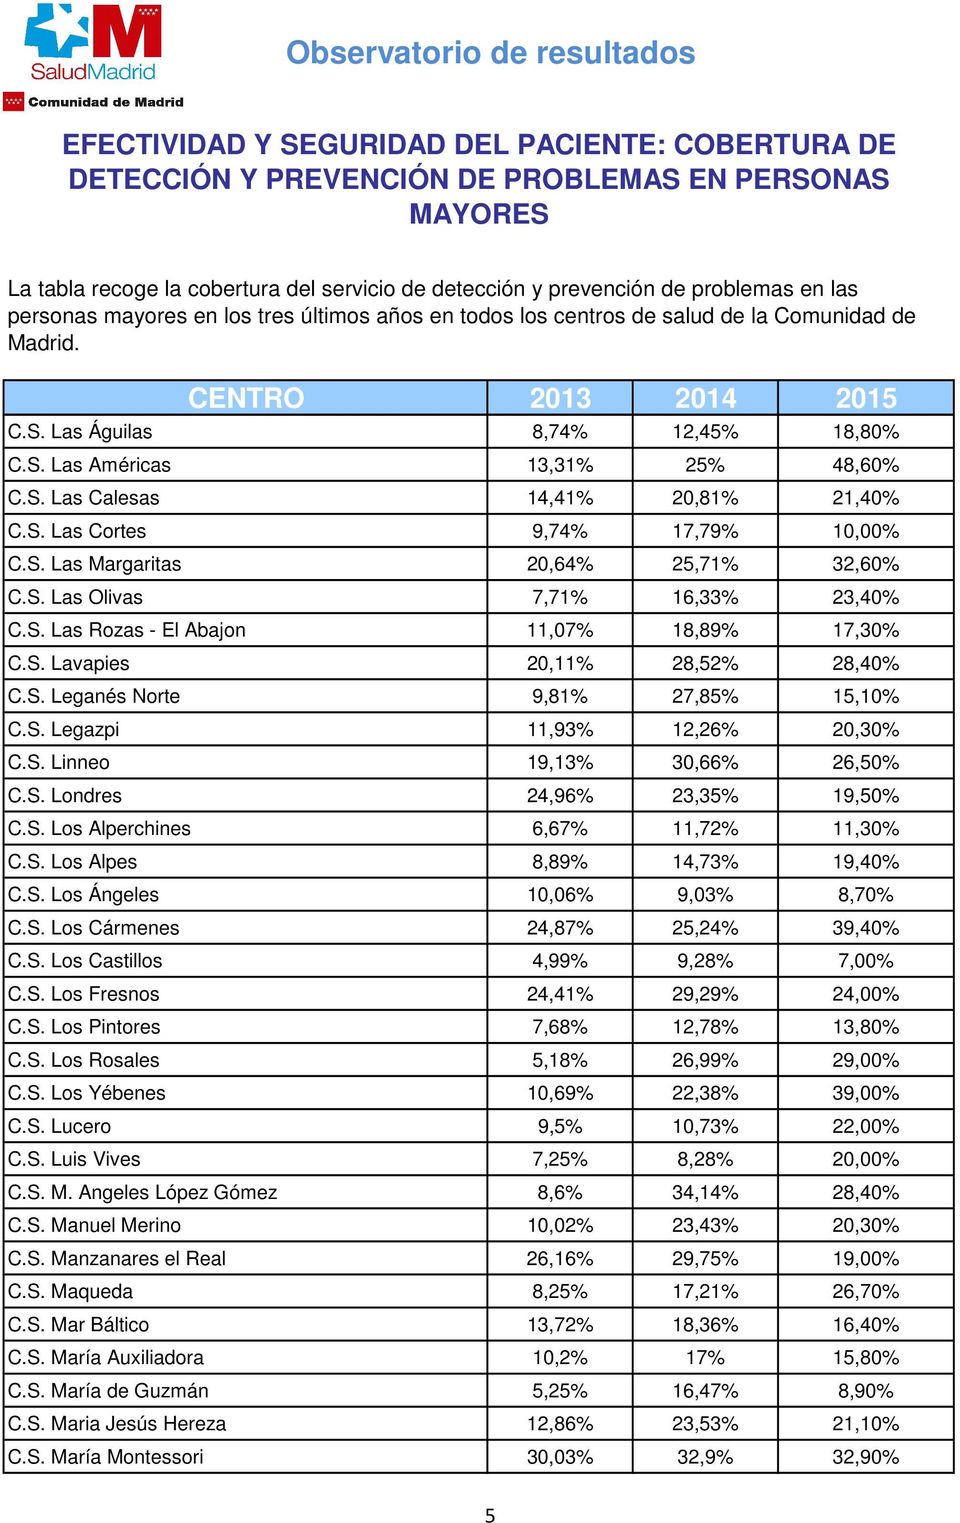 S. Los Alperchines 6,67% 11,72% 11,30% C.S. Los Alpes 8,89% 14,73% 19,40% C.S. Los Ángeles 10,06% 9,03% 8,70% C.S. Los Cármenes 24,87% 25,24% 39,40% C.S. Los Castillos 4,99% 9,28% 7,00% C.S. Los Fresnos 24,41% 29,29% 24,00% C.